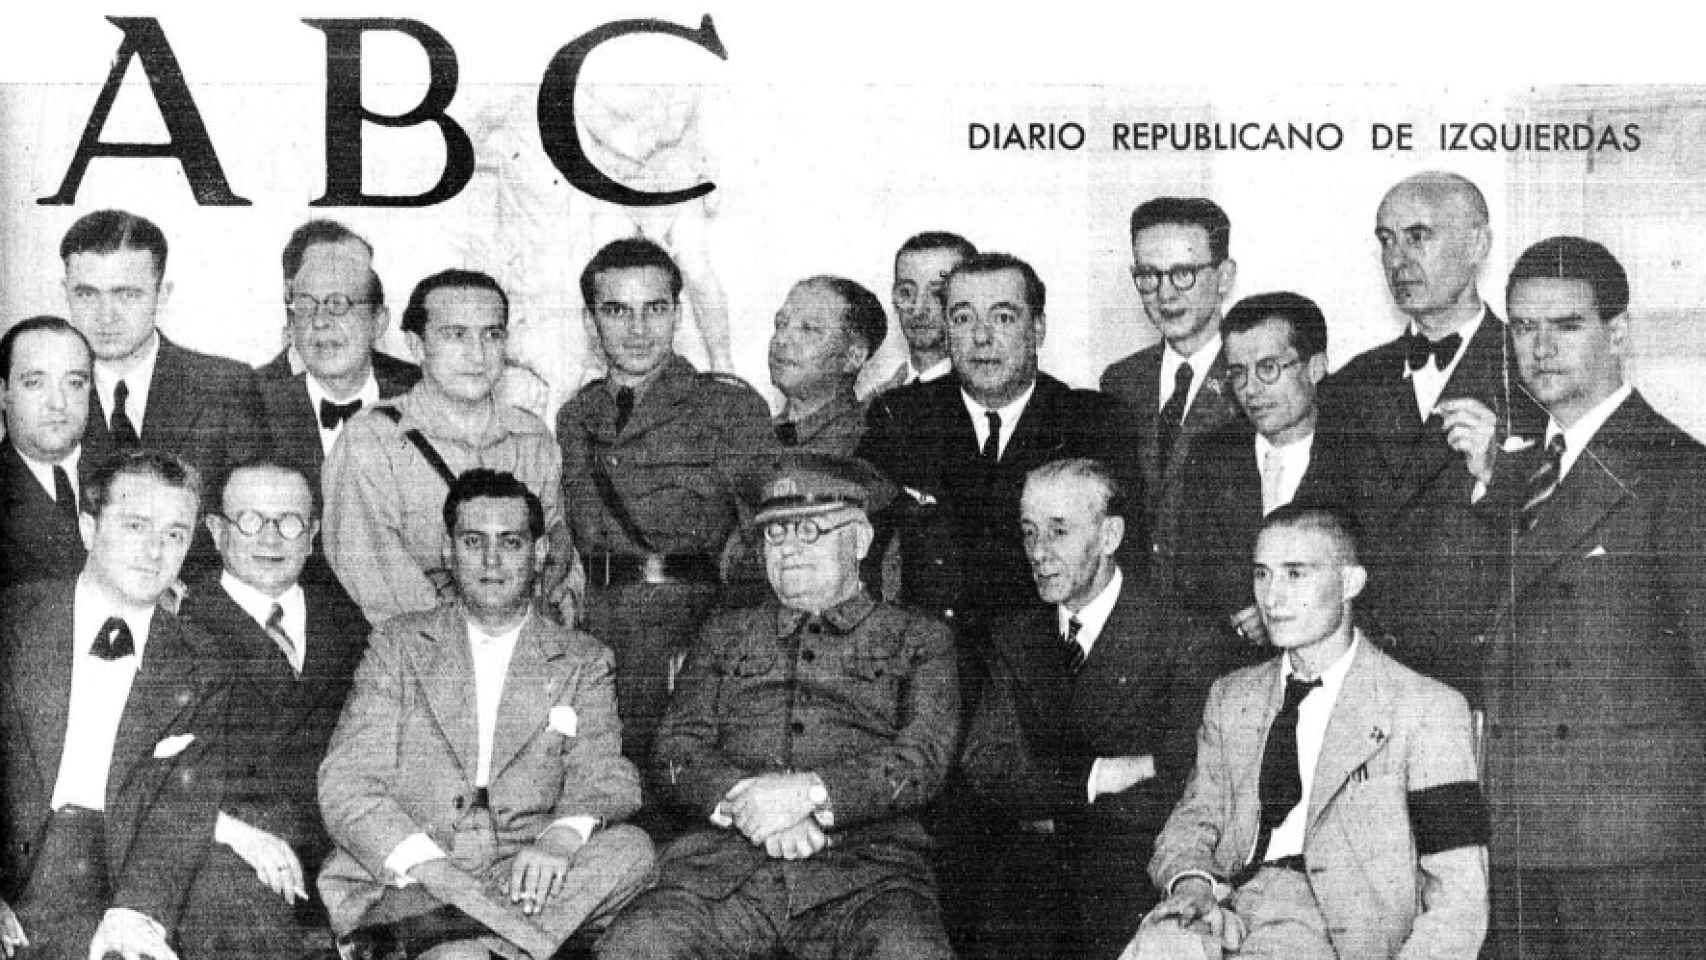 Portada del 'ABC' el 8 de junio de 1937, en la que aparece Miaja con un grupo de personas en el Palacio de Osuna.